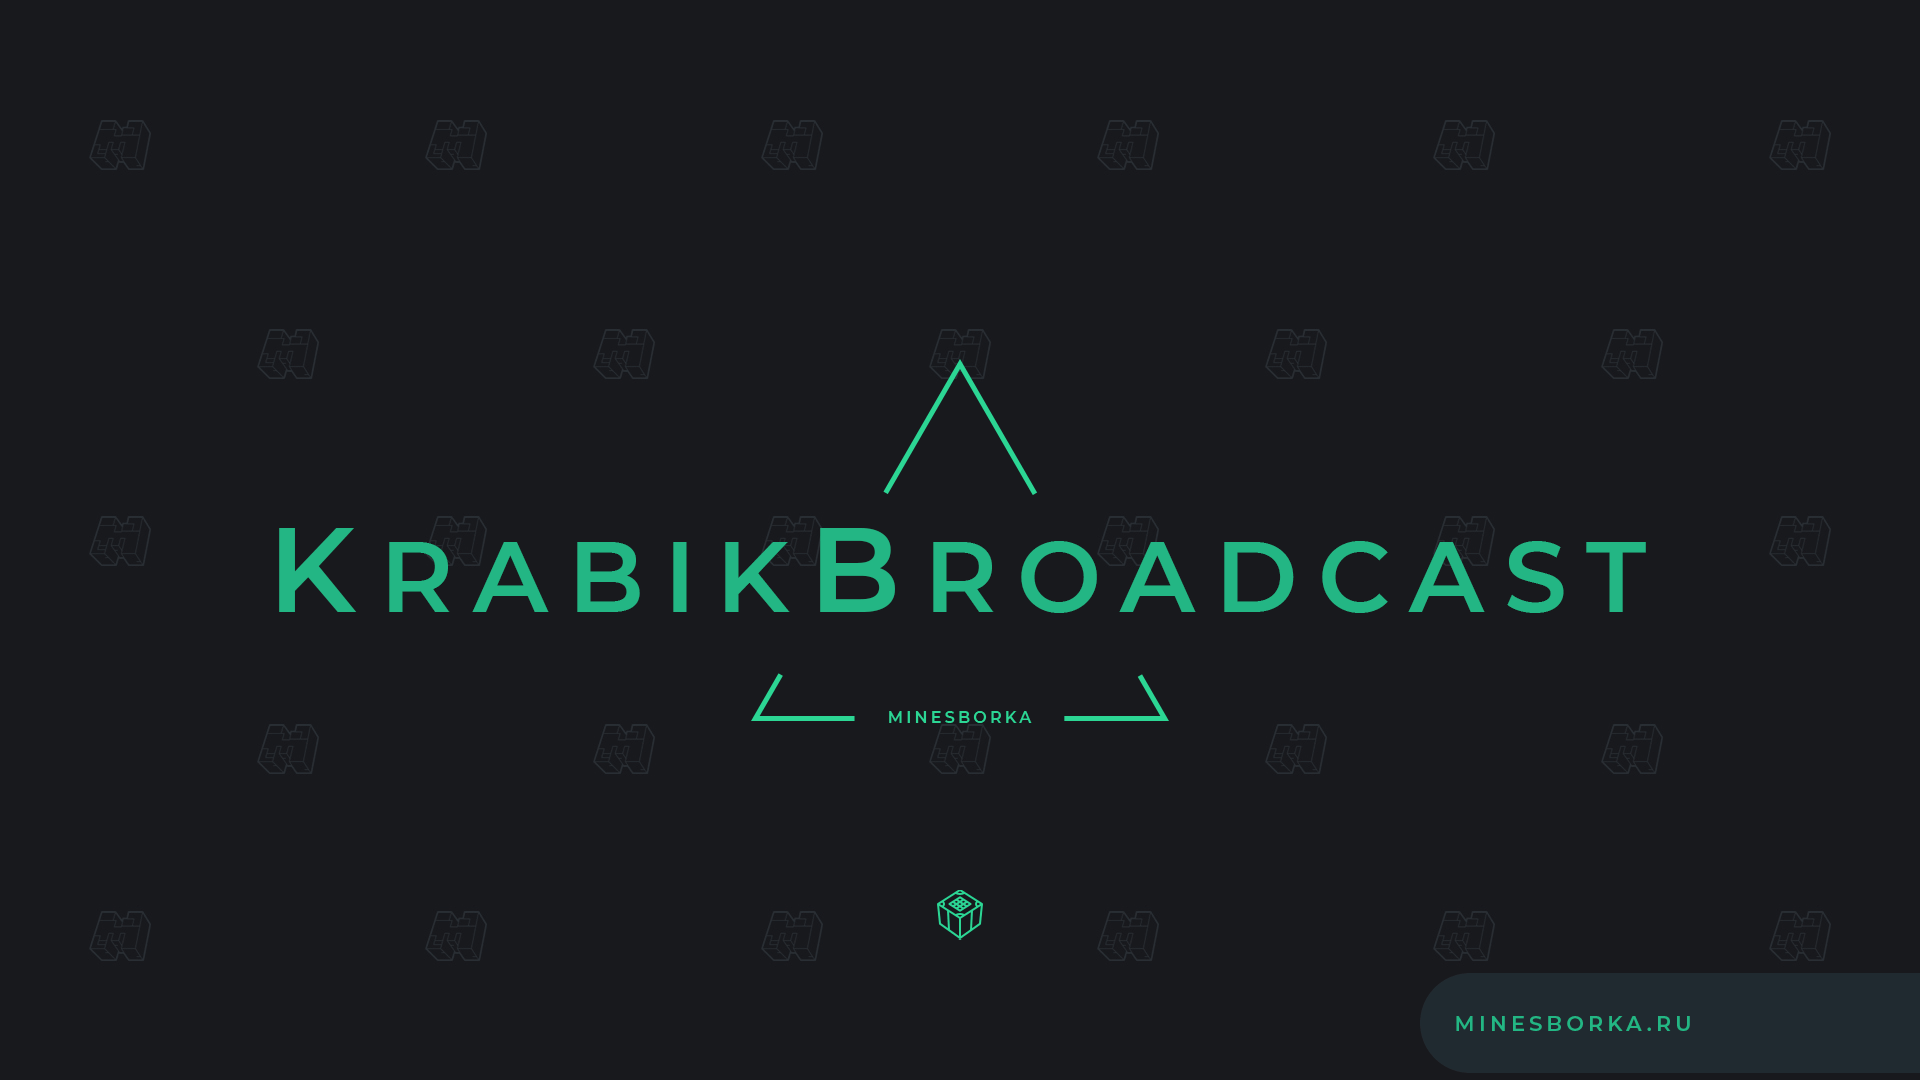 Скачать плагин KrabikBroadcast | Объявления на сервере | Плагин на объявления сервера